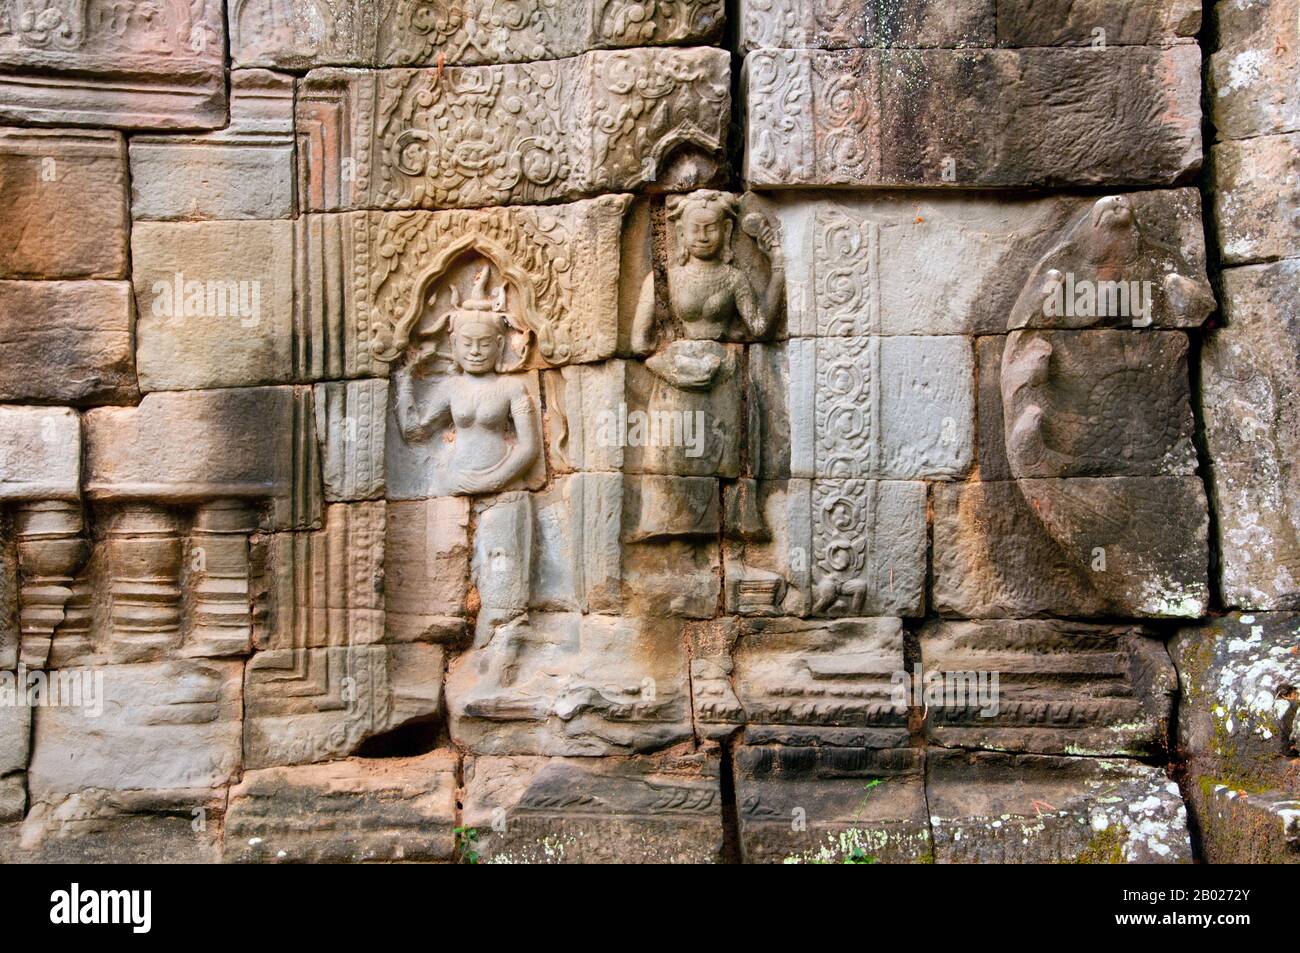 Cambogia: Apsara (Ninfe celesti), Banteay Kdei, Angkor. Banteay Kdei si trova a sud-est di Ta Prohm e ad est di Angkor Thom. Fu costruito tra la fine degli anni '12th e i primi anni '13th durante il regno di Jayavarman VII, è un tempio buddista in stile Bayon, simile in pianta a Ta Prohm e Preah Khan, ma meno complesso e più piccolo. Foto Stock